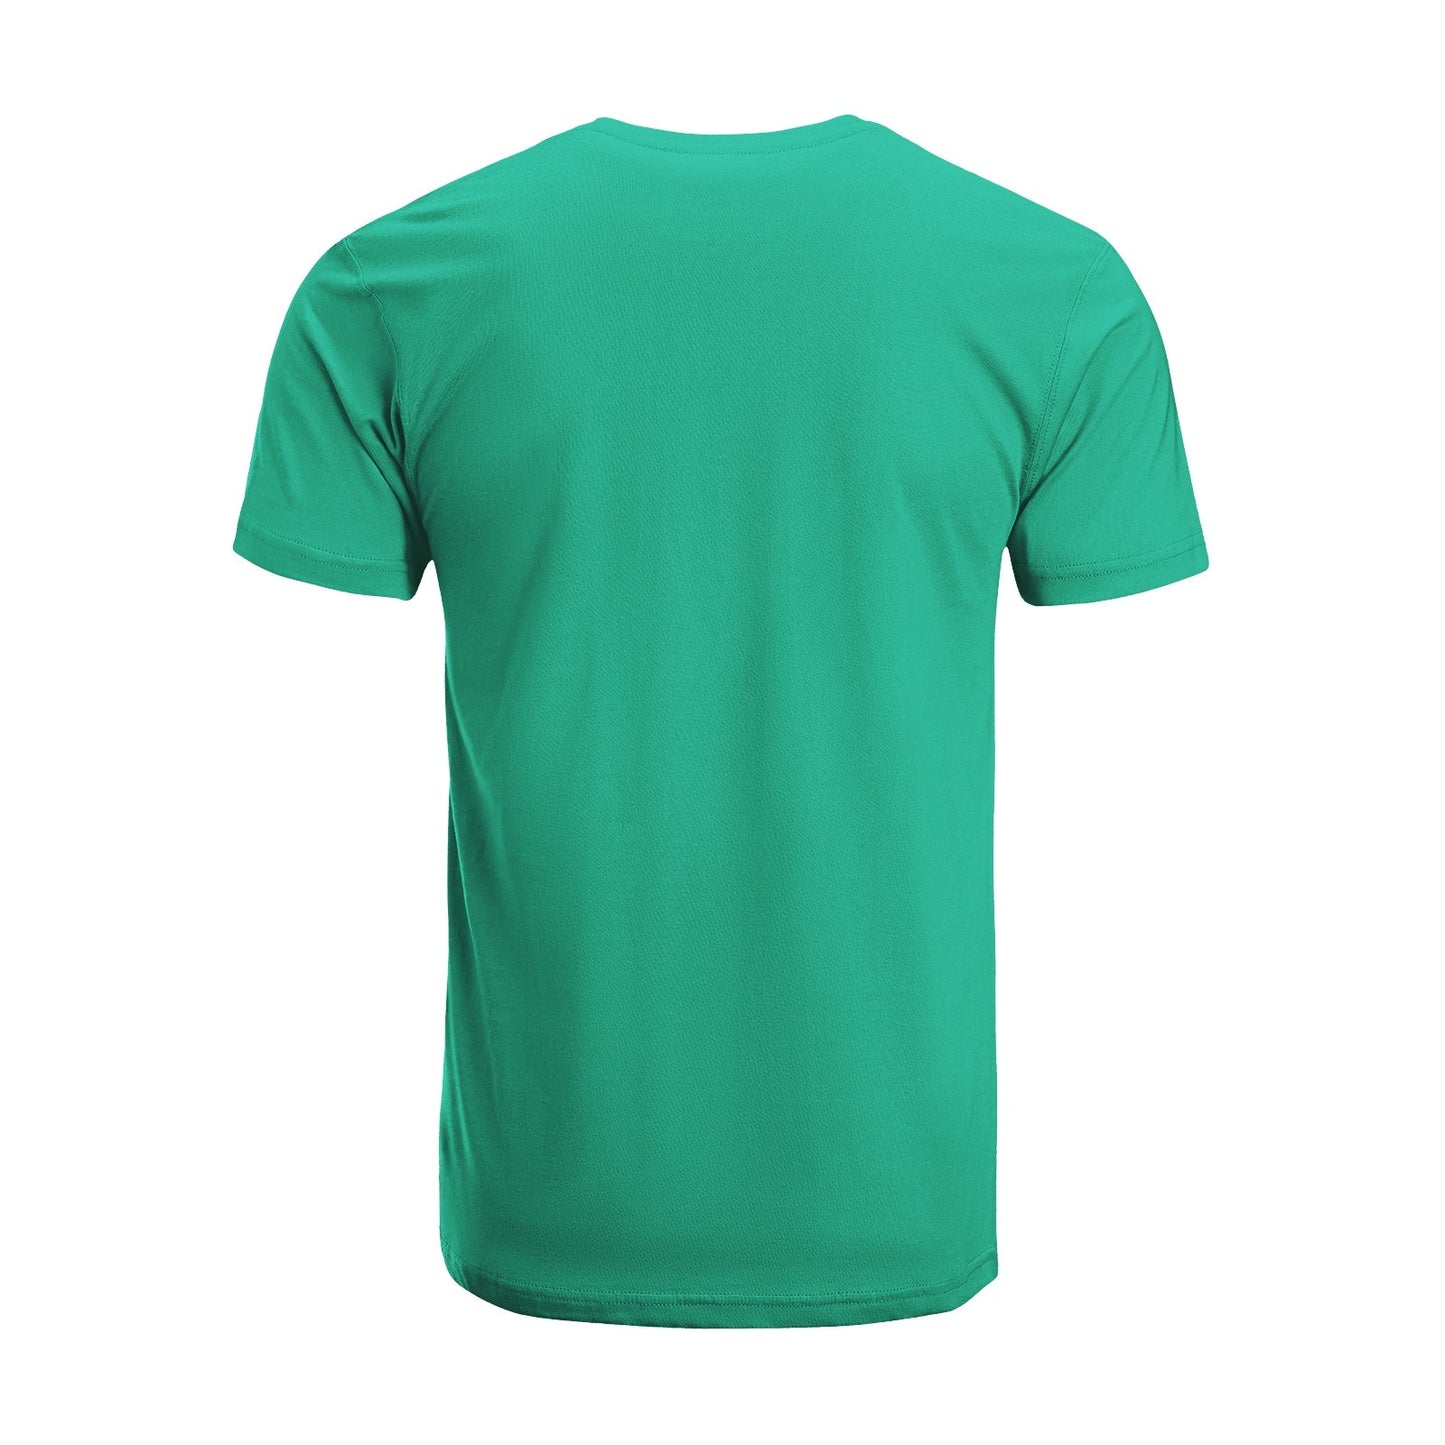 Unisex Short Sleeve Crew Neck Cotton Jersey T-Shirt TRUCK 49